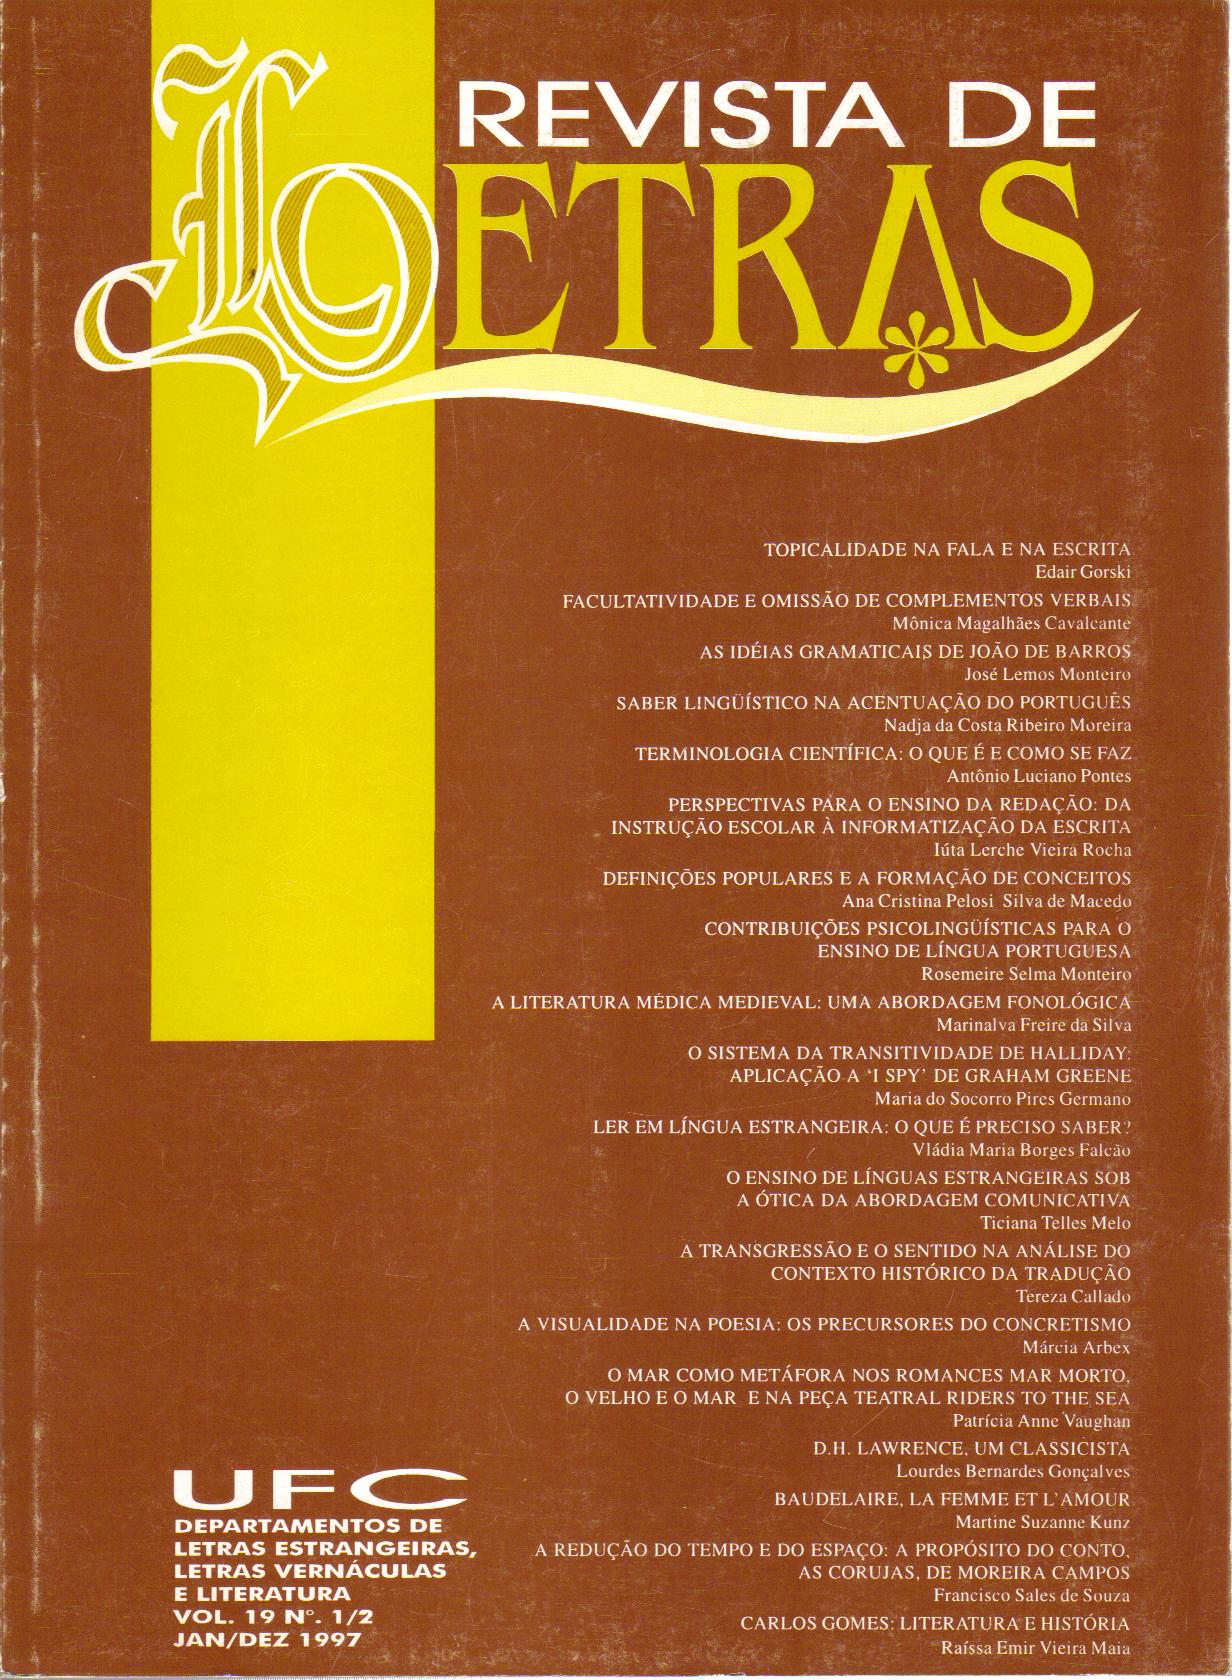 					Ver Vol. 1 Núm. 15 (1993): REVISTA DE LETRAS V. 1/8, N. 15 (1990 a 1993)
				